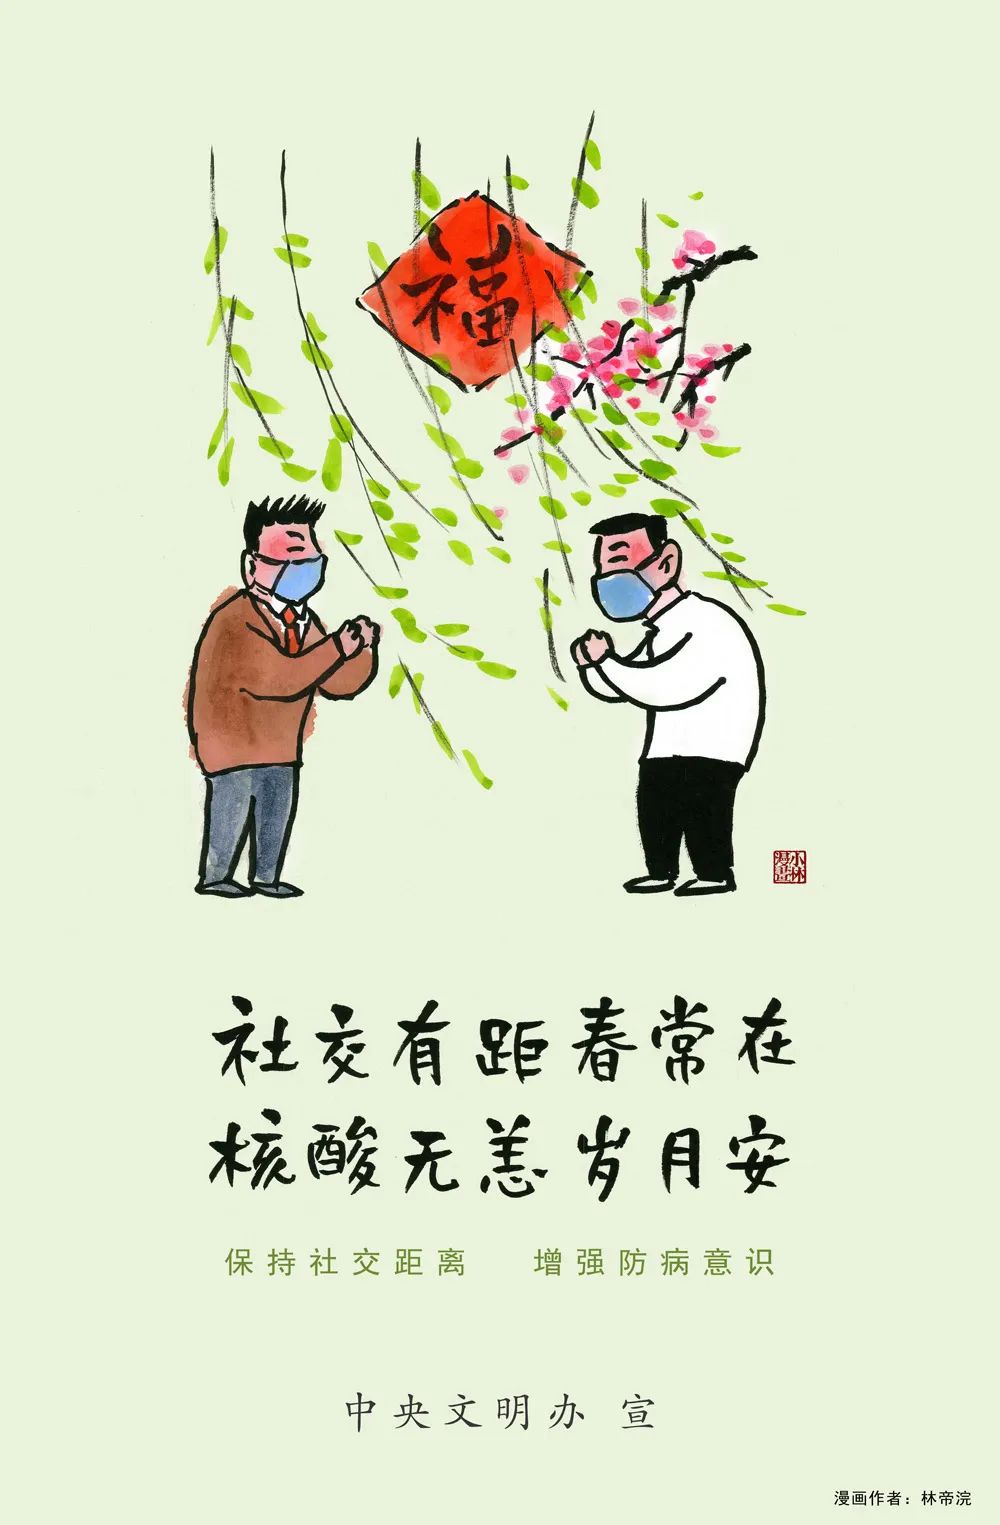 小林漫画 | 社交有距春常在，核酸无恙岁月安